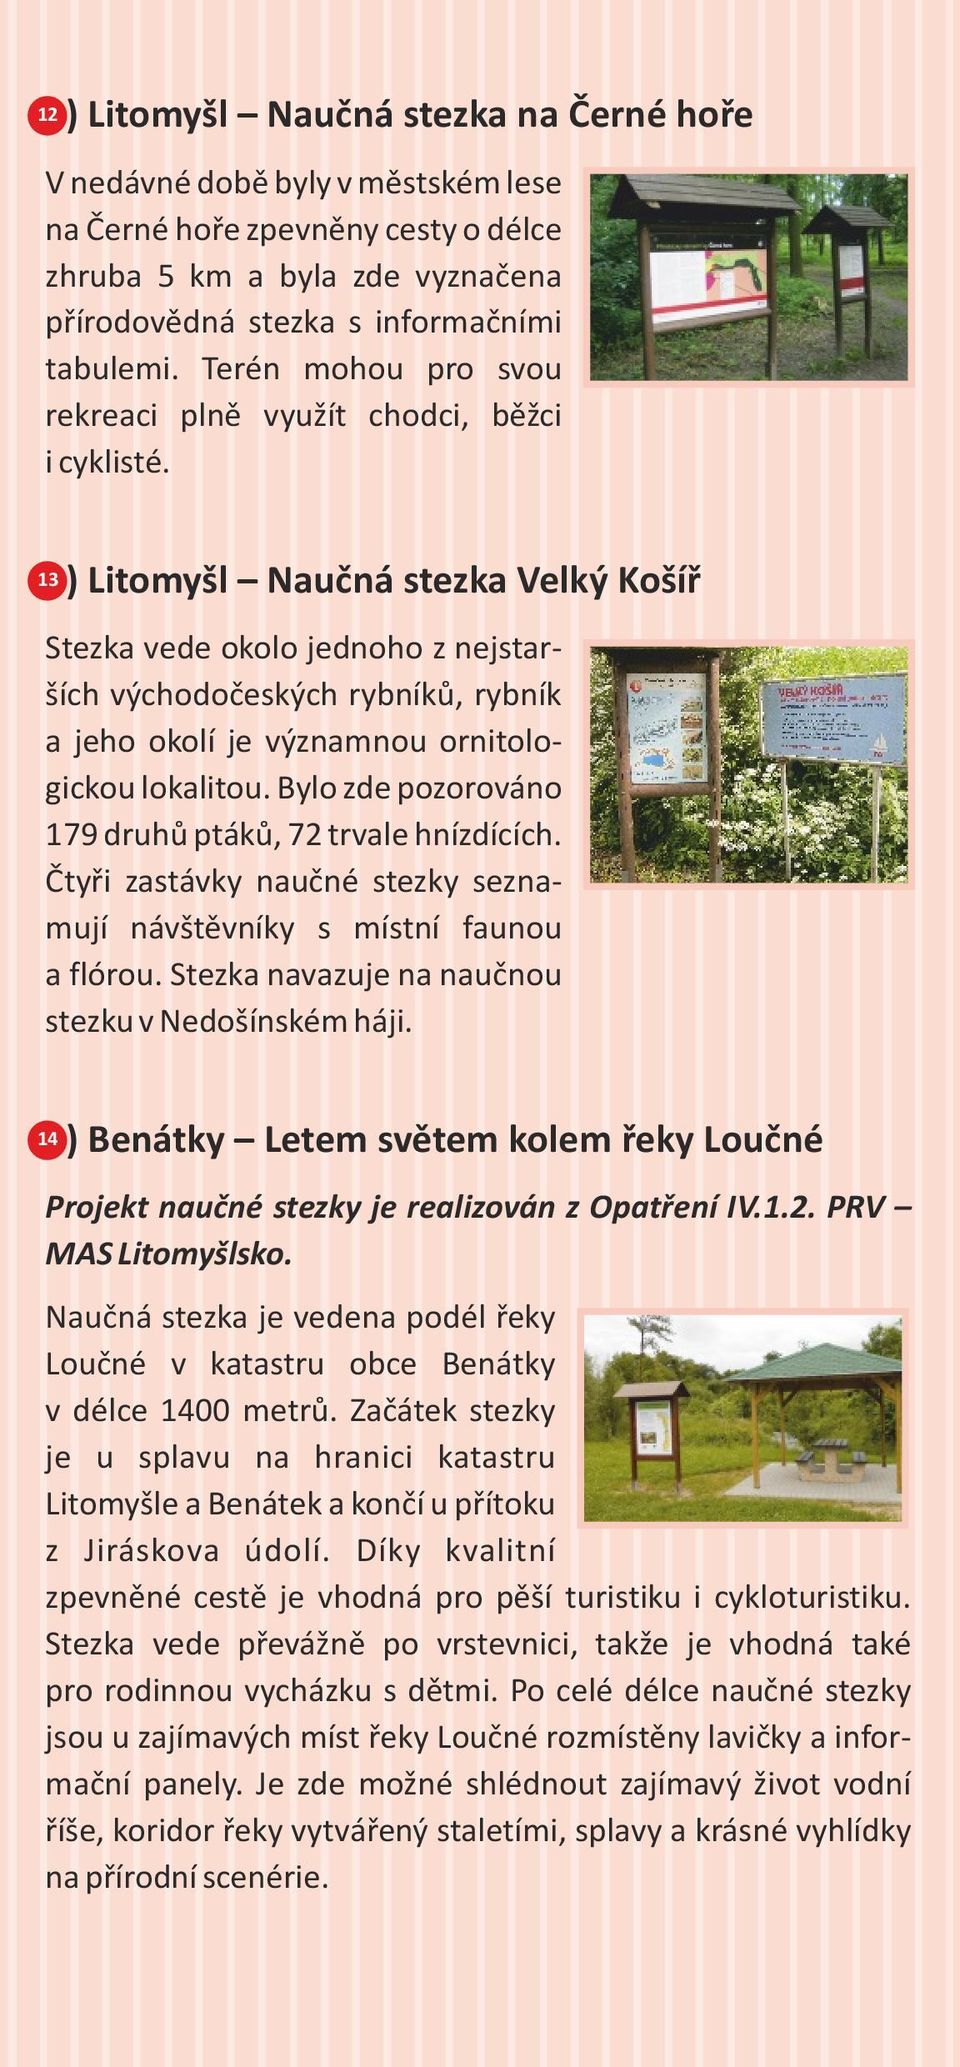 3) Litomyšl Naučná stezka Velký Košíř 13 Stezka vede okolo jednoho z nejstarších východočeských rybníků, rybník a jeho okolí je významnou ornitologickou lokalitou.